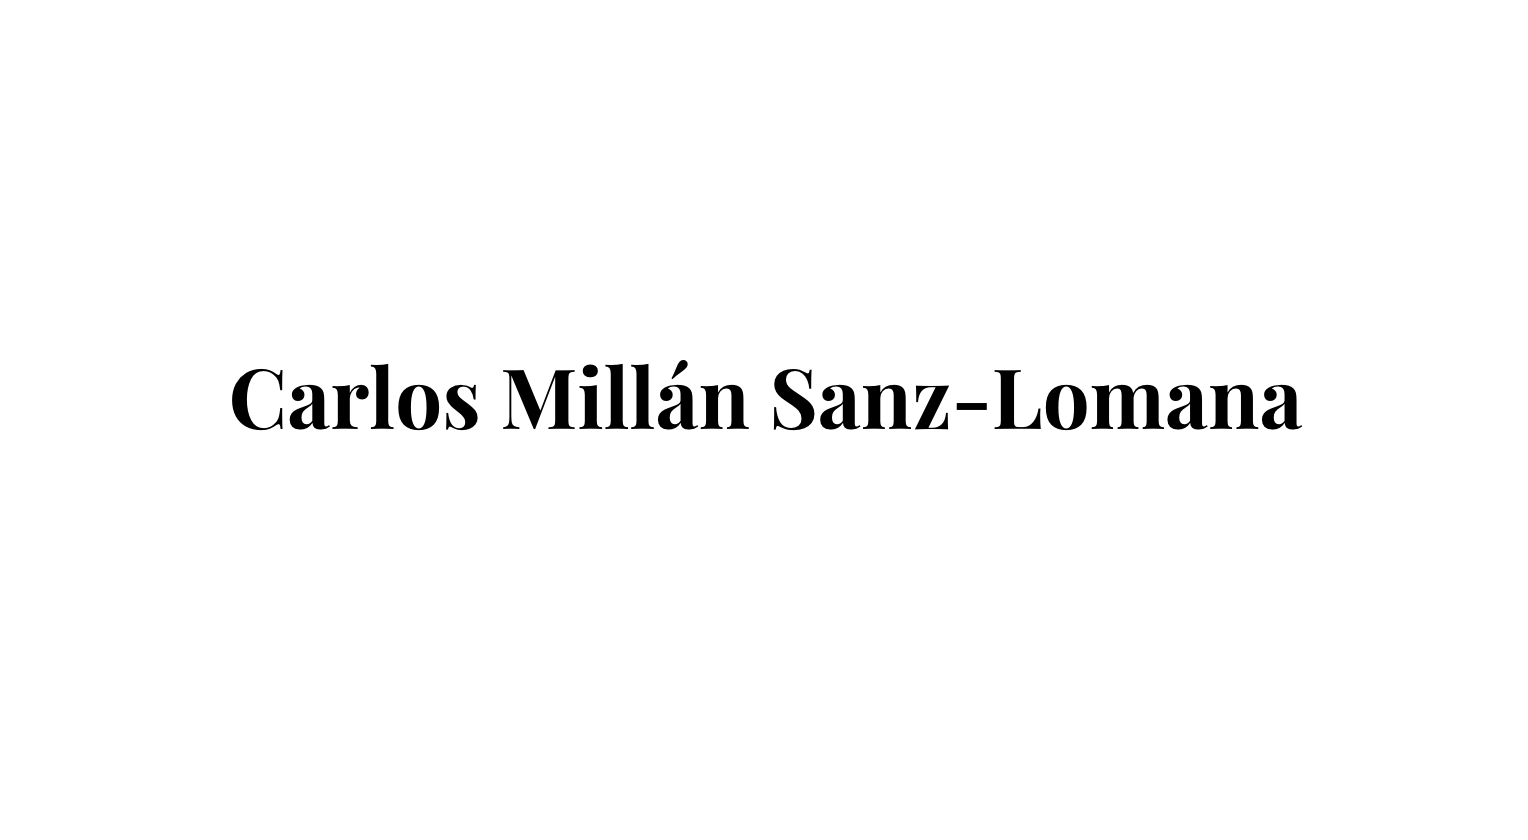 Carlos Millán Sanz-Lomana